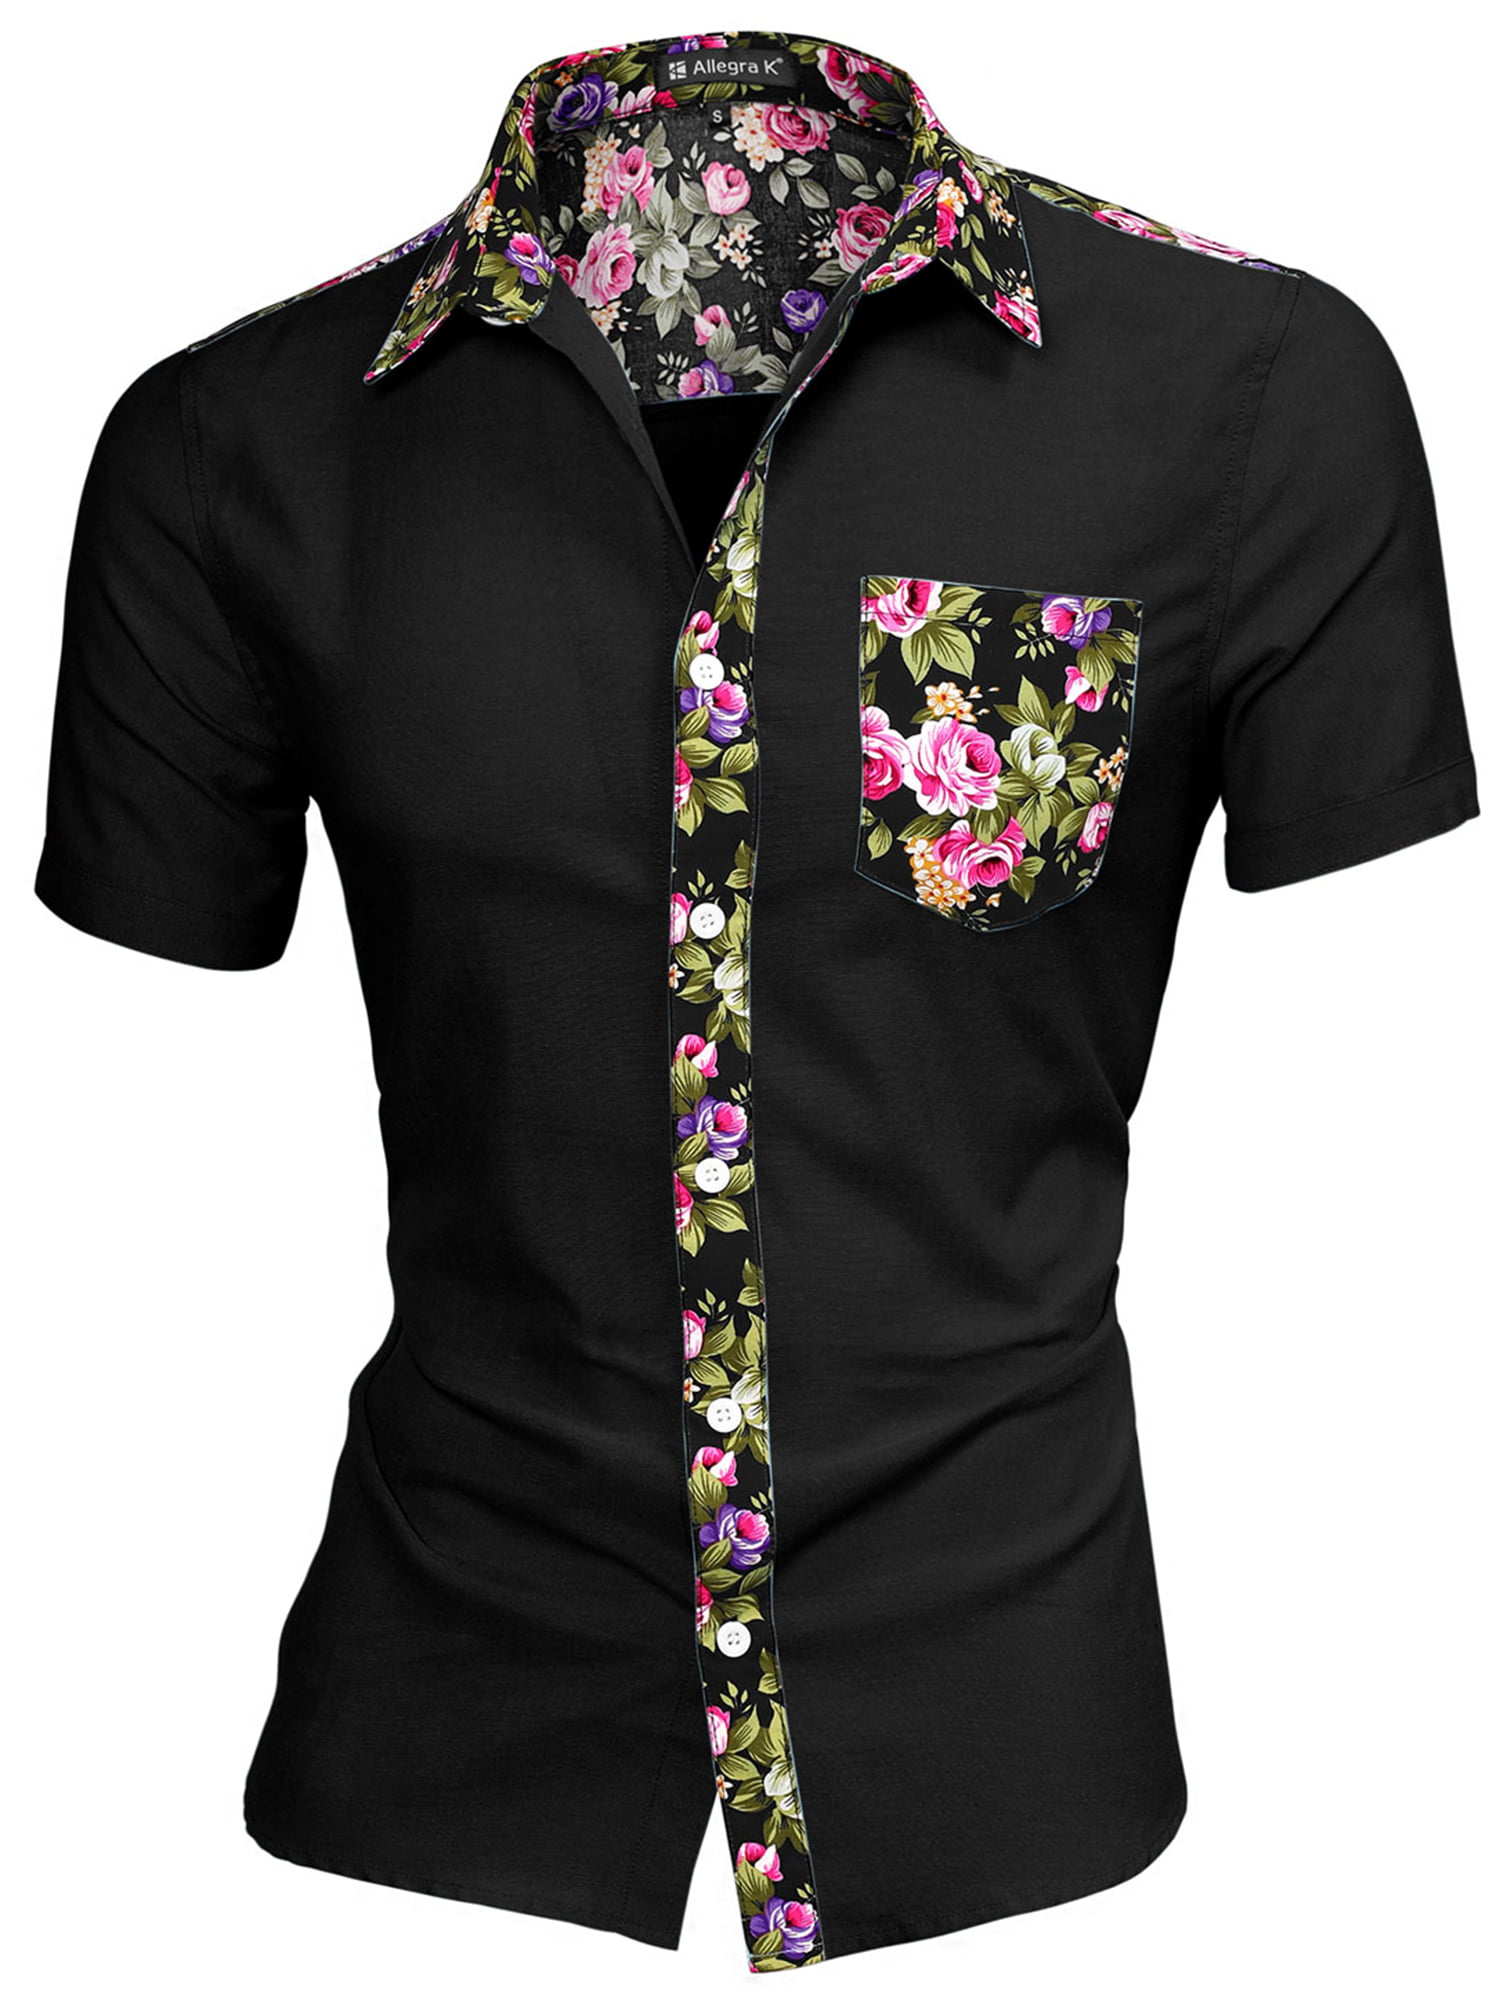 Unique Bargains - 1310 8838 Men Summer Floral Print Pocket Short Sleeve ...